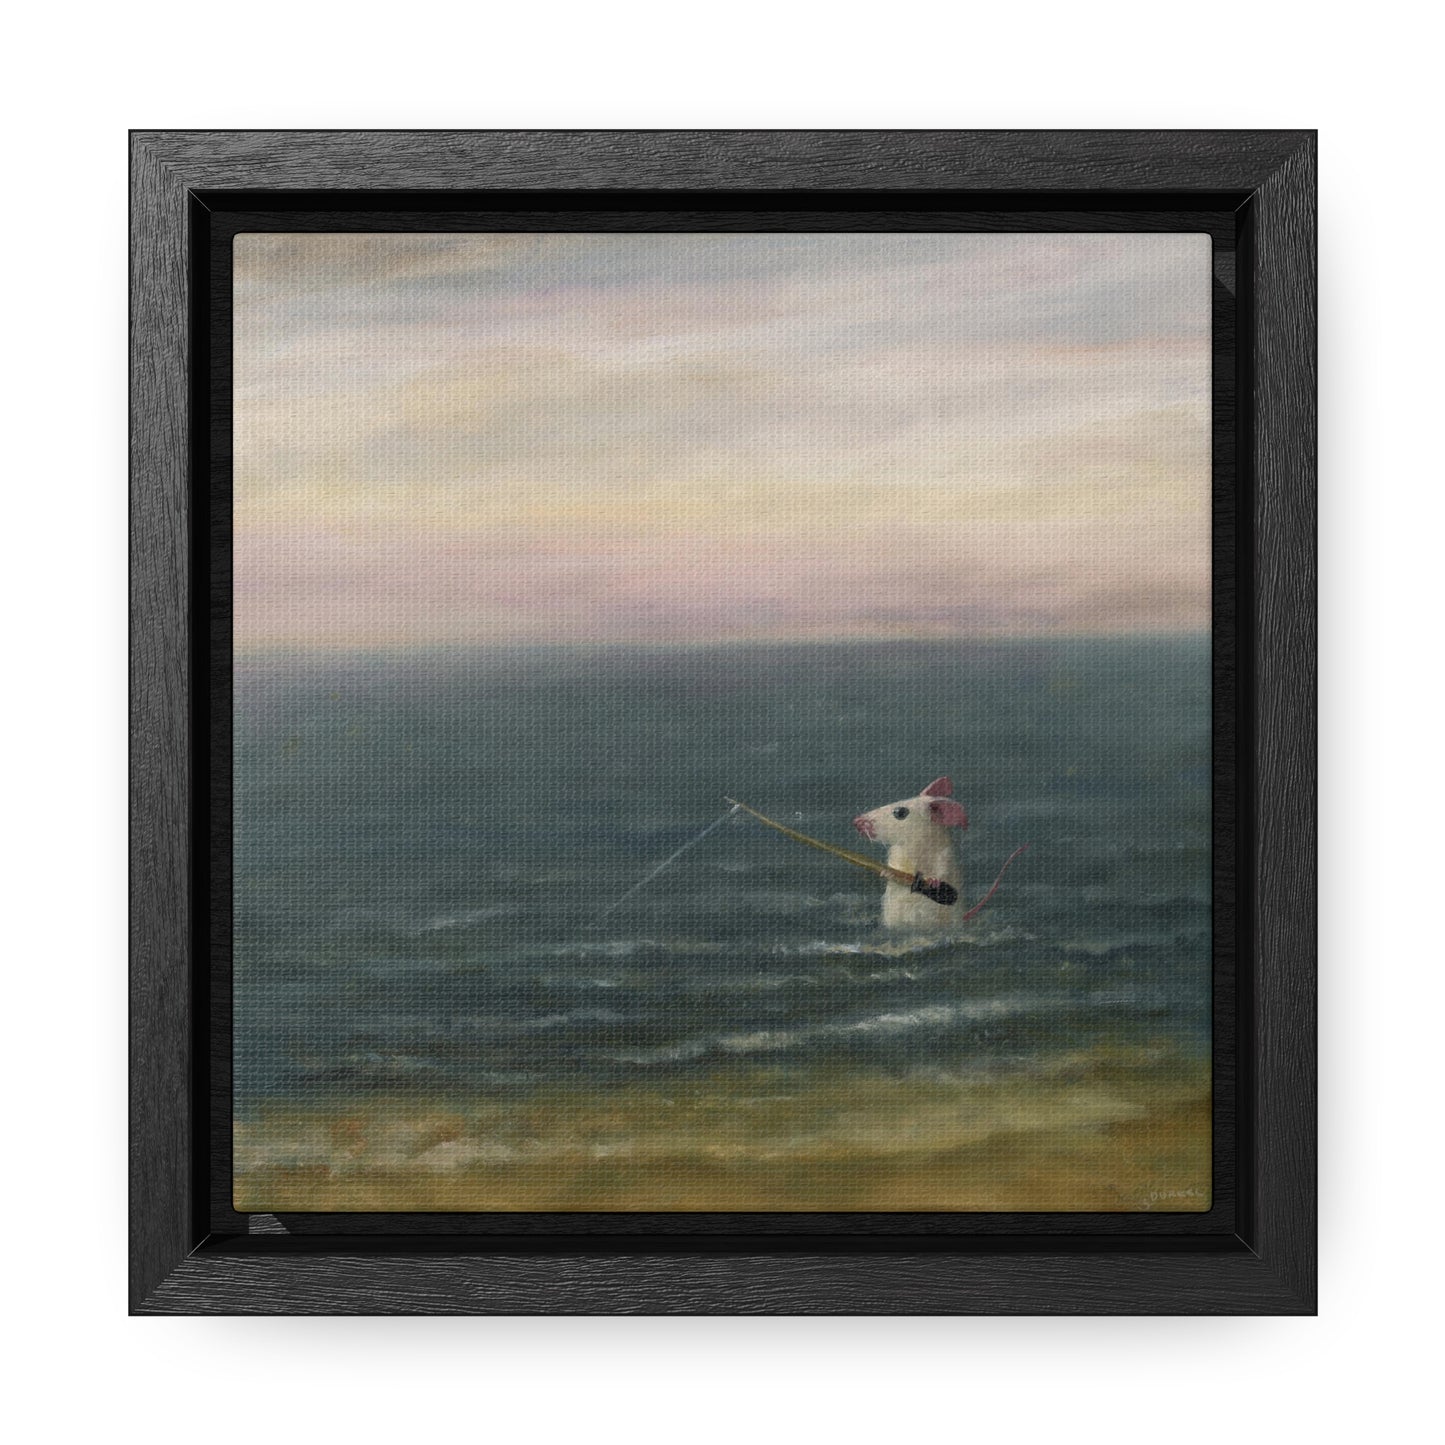 Stuart Dunkel: "Gone Fishing" - Framed Canvas